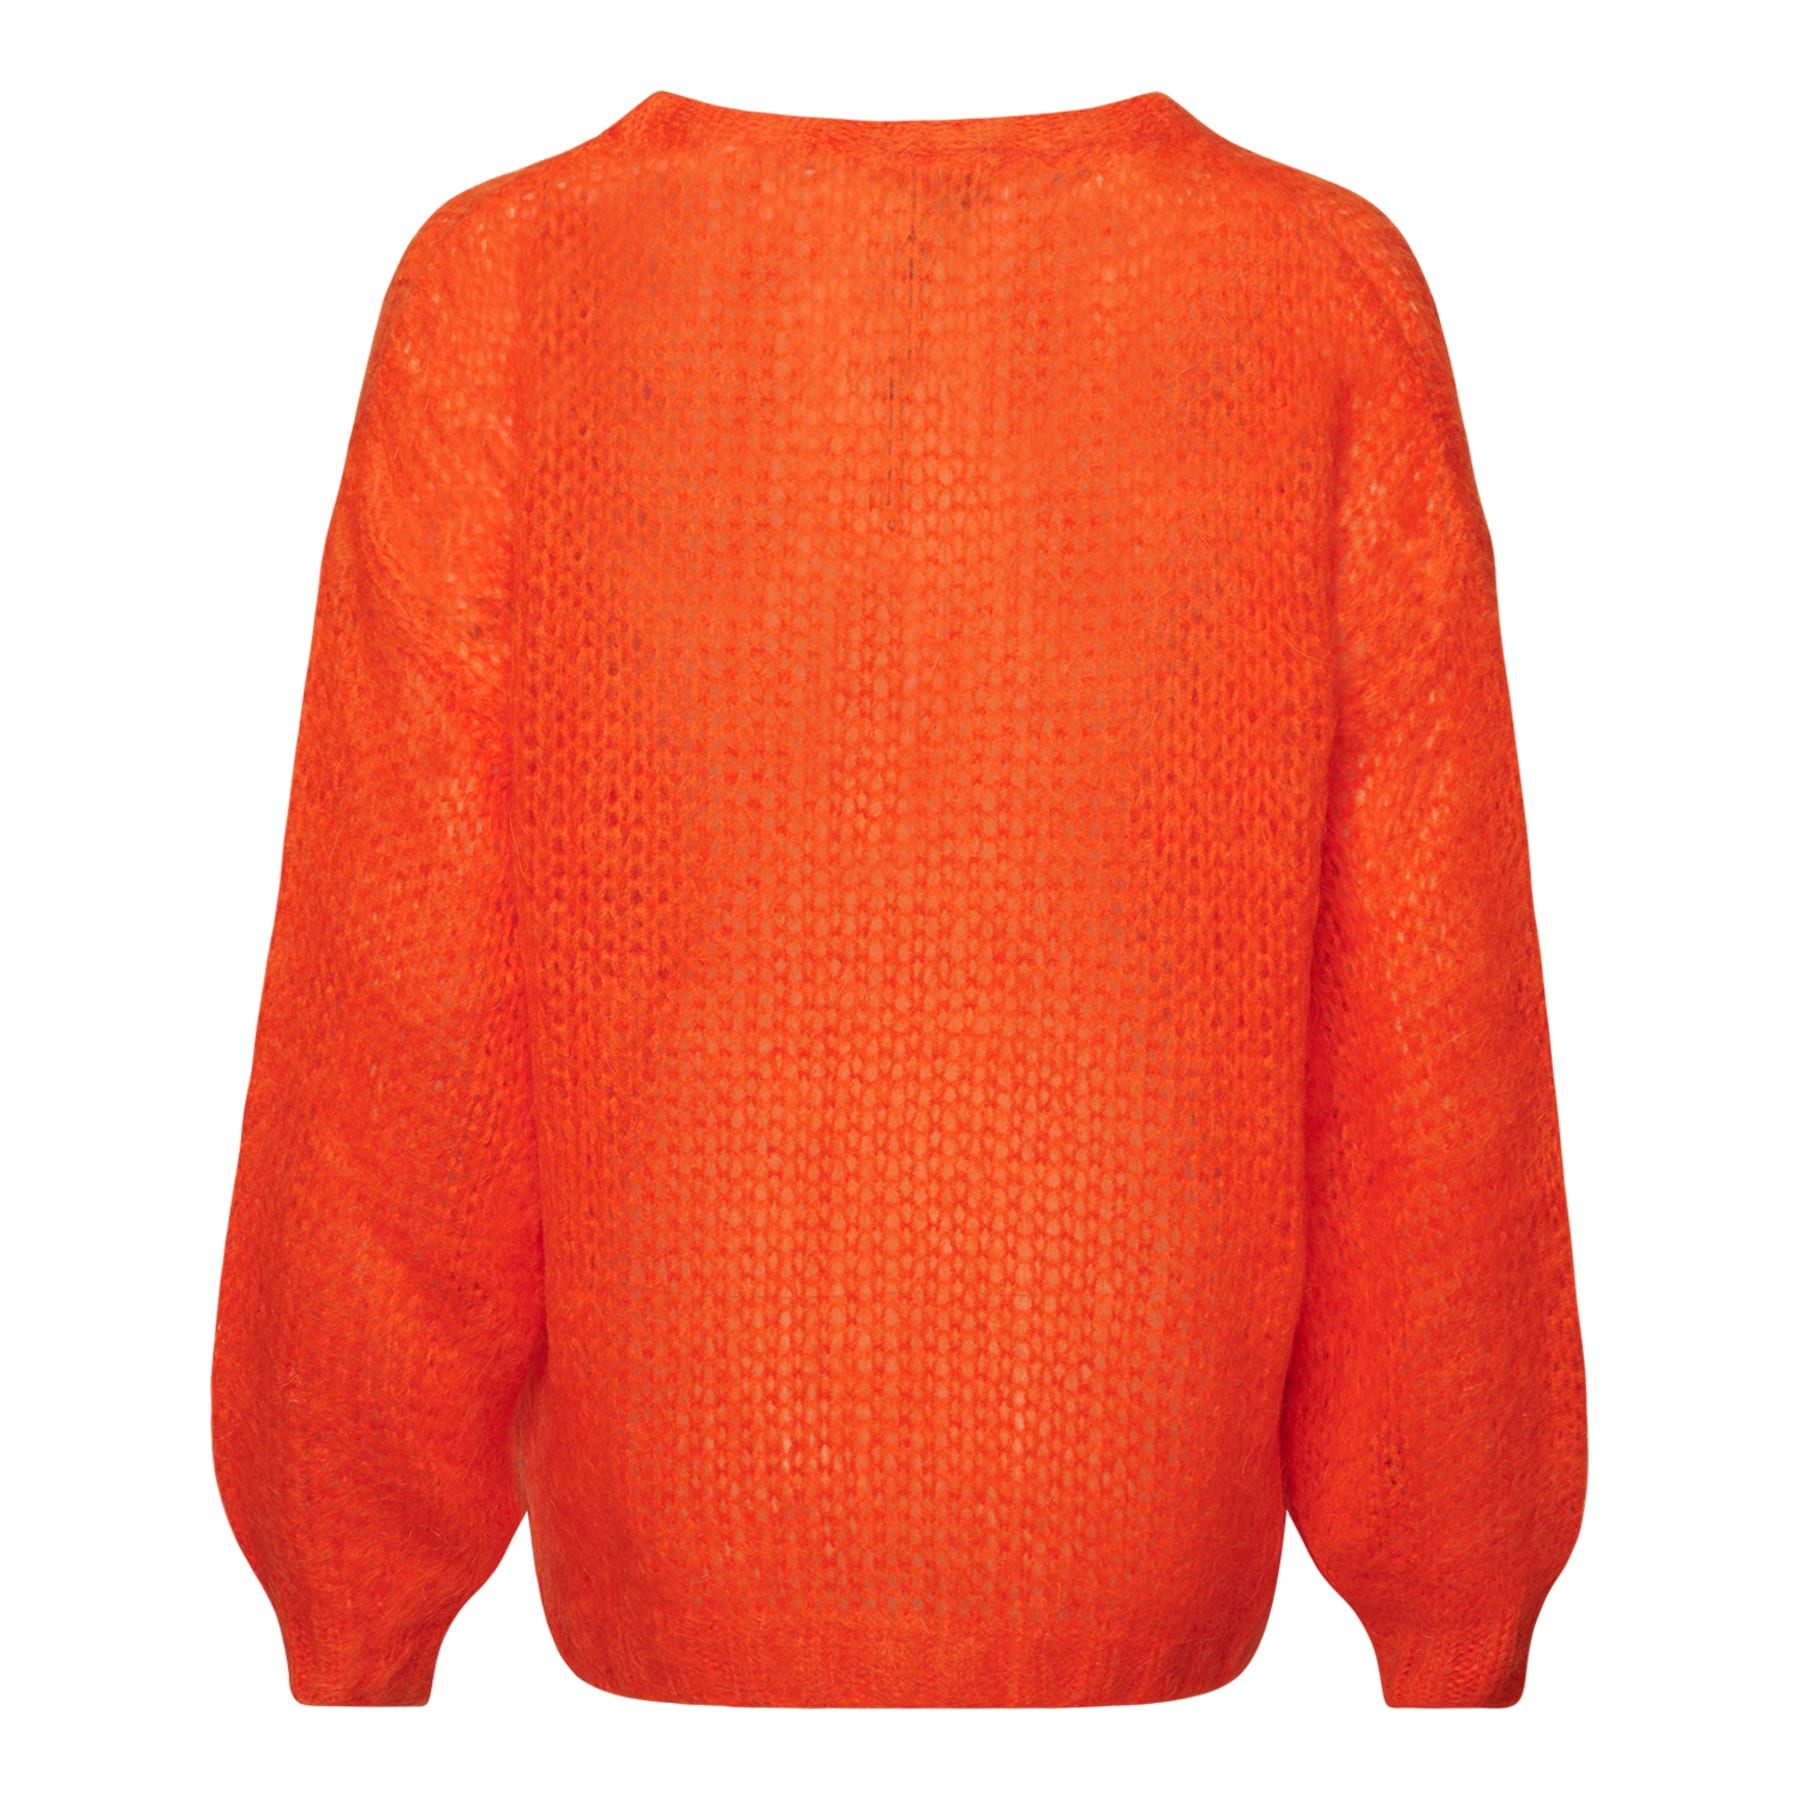 Delta Knit Sweater - Bright Orange